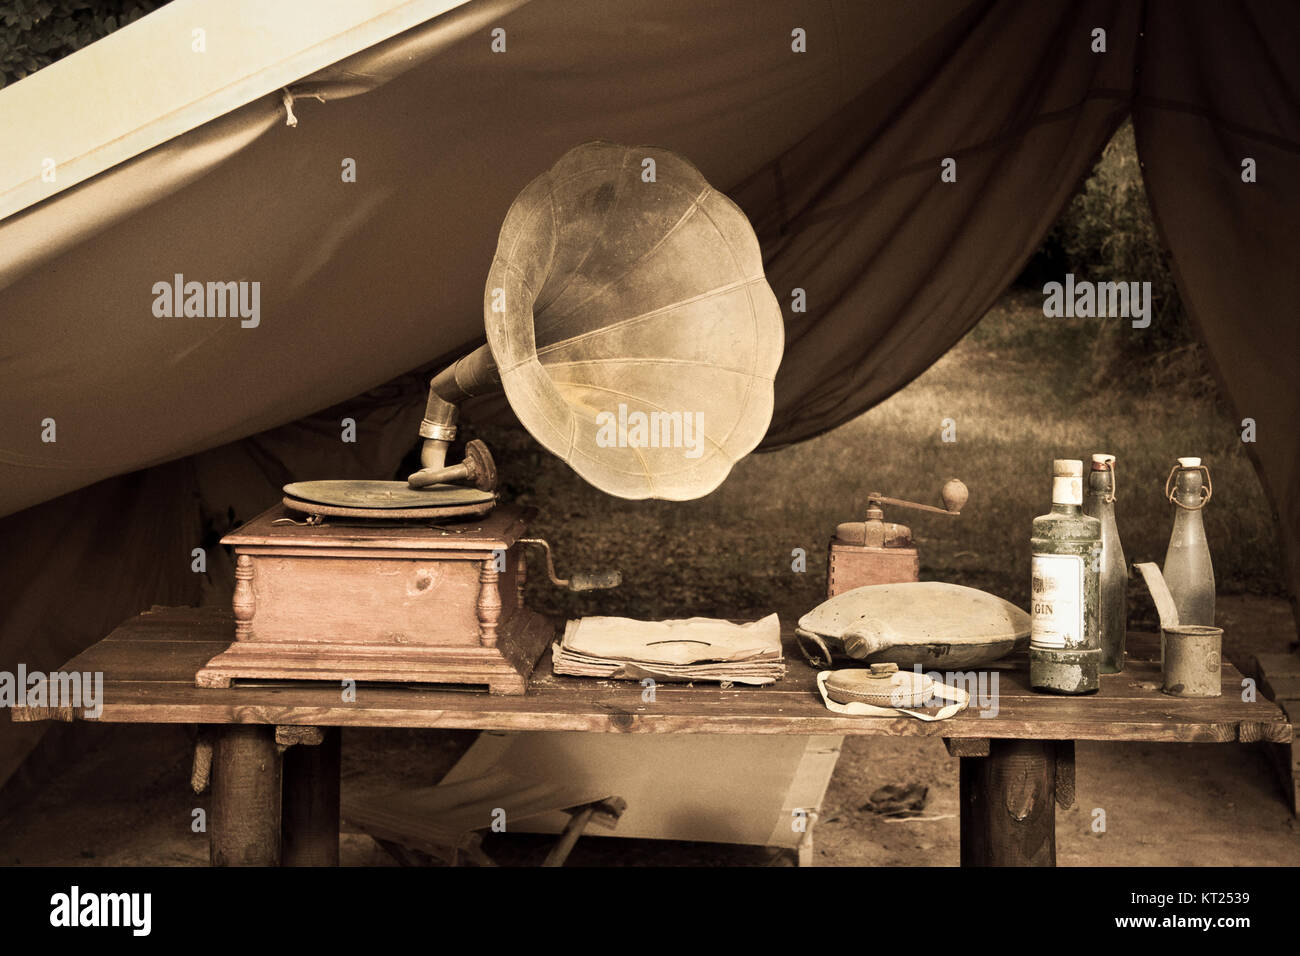 Camping Zelt mit einem alten Plattenspieler und verschiedene Objekte auf einem rustikalen Holztisch. Stockfoto